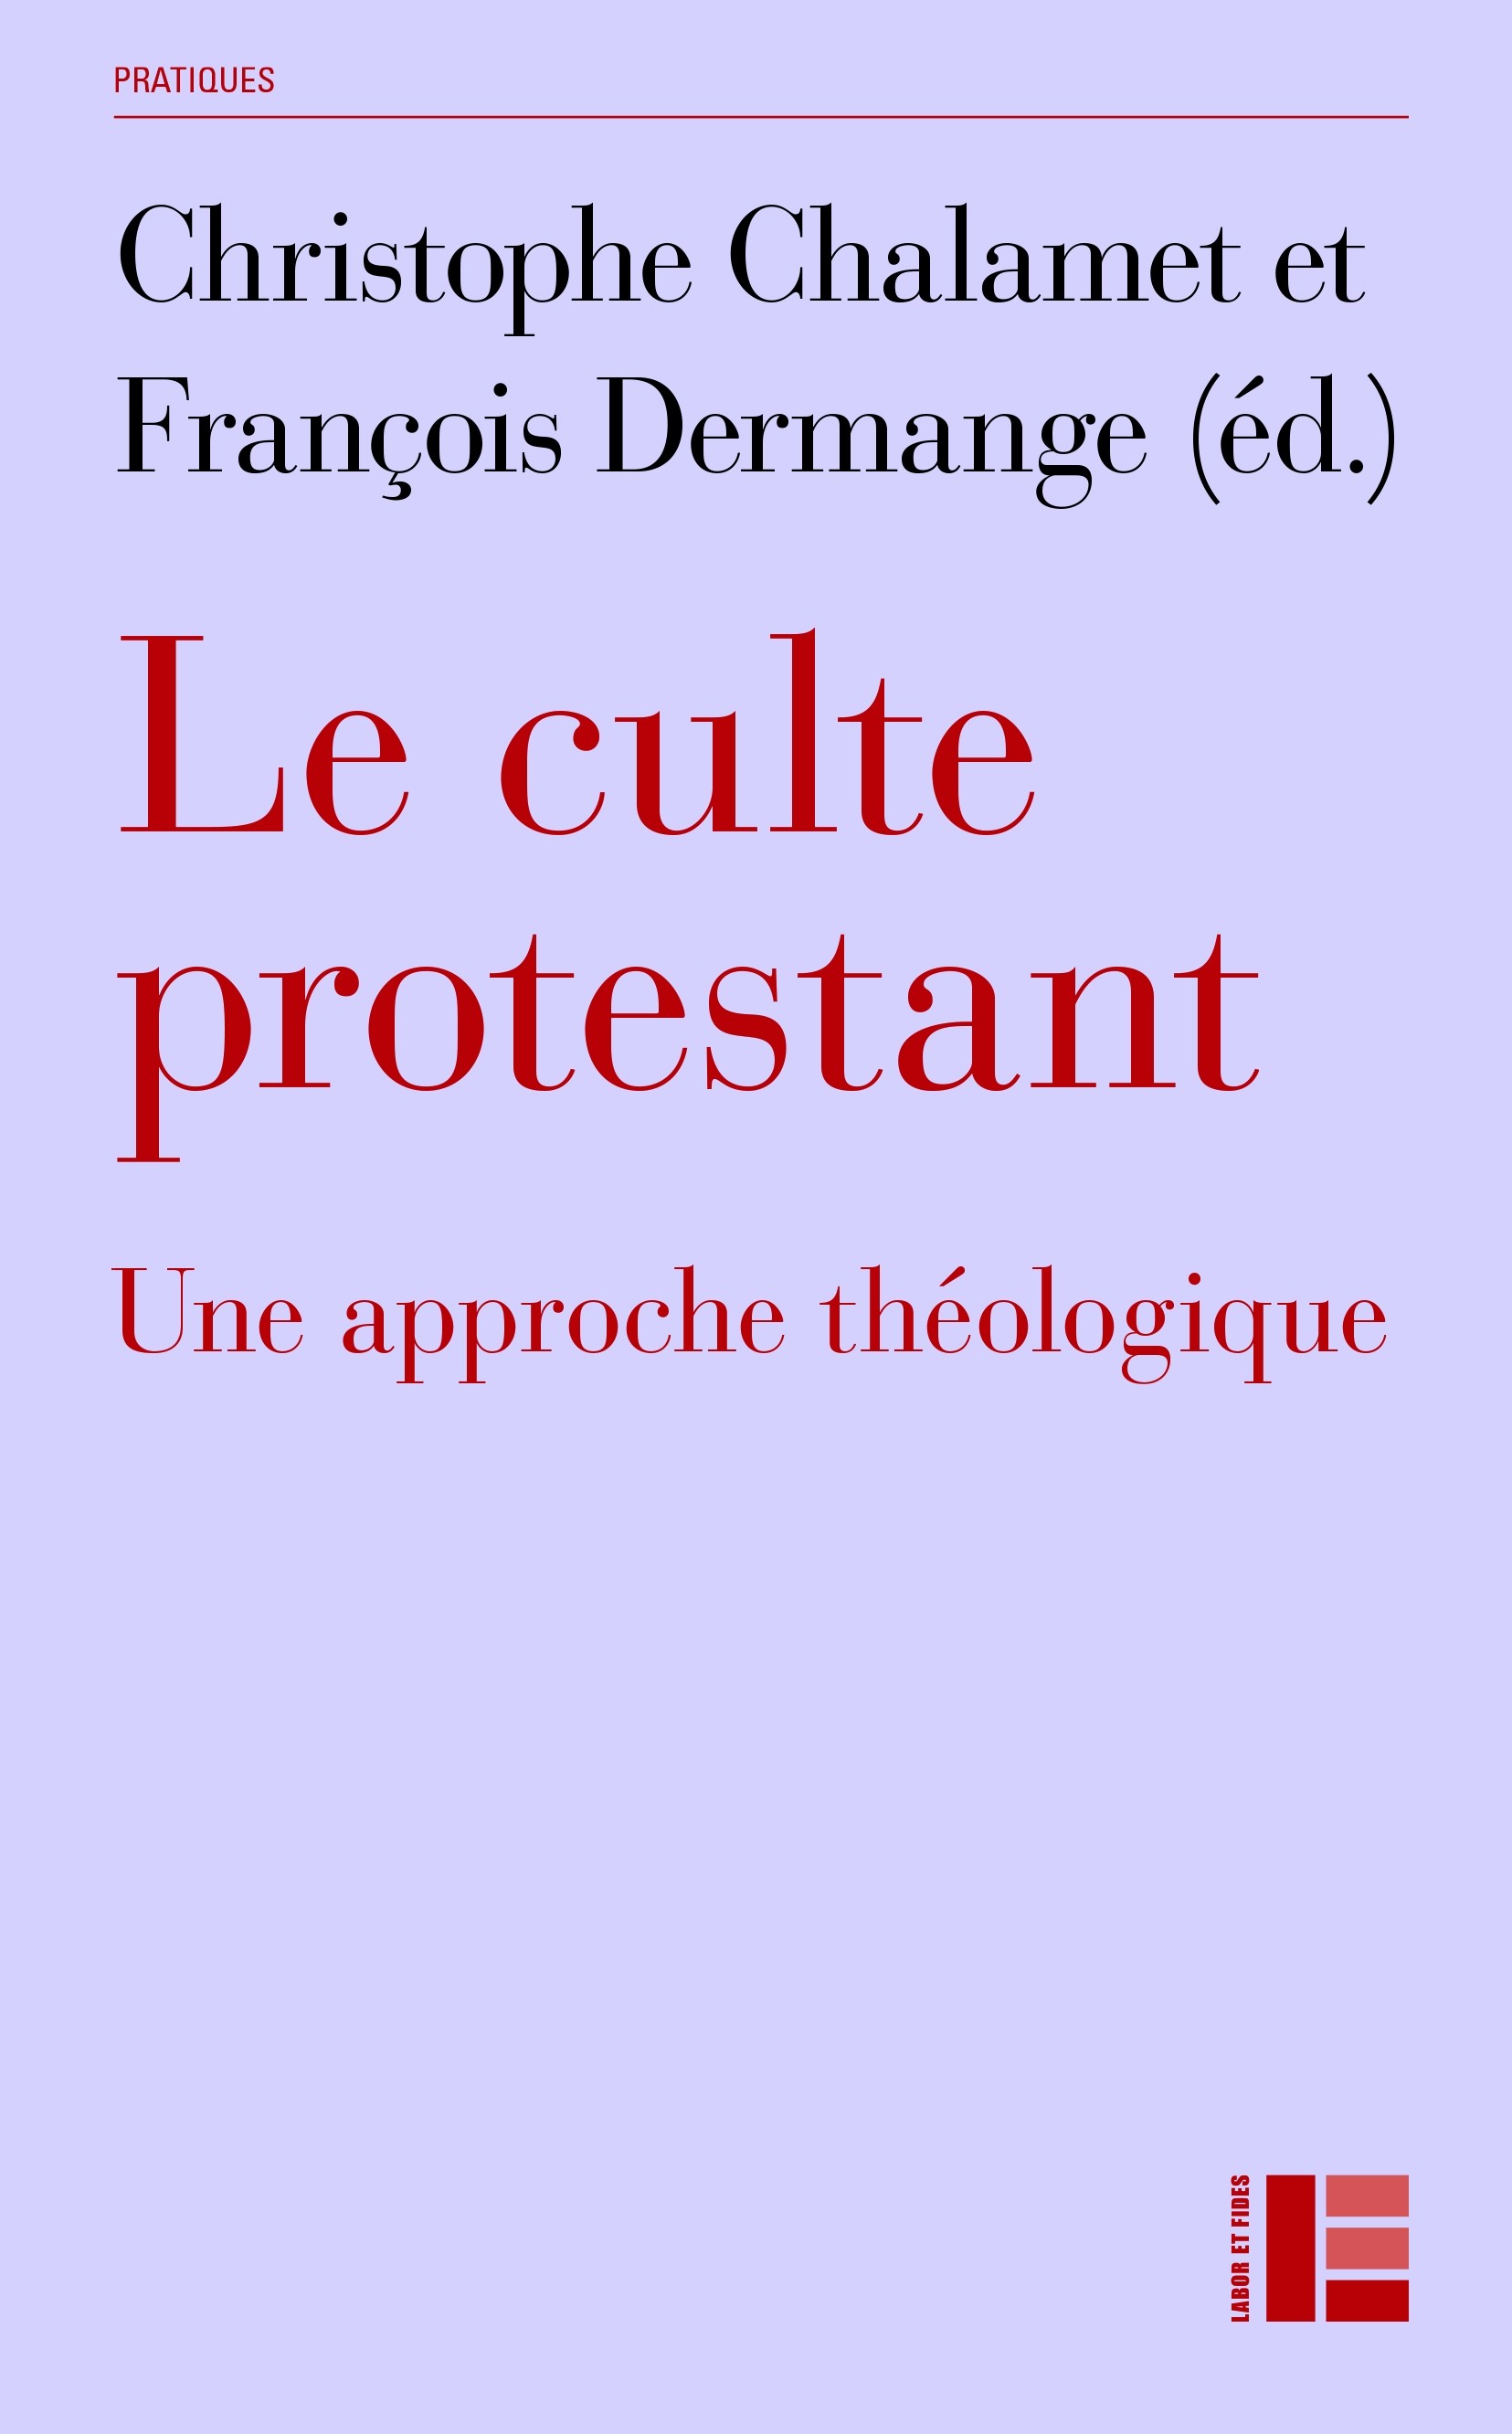 Culte protestant (Le) - Une approche théologique